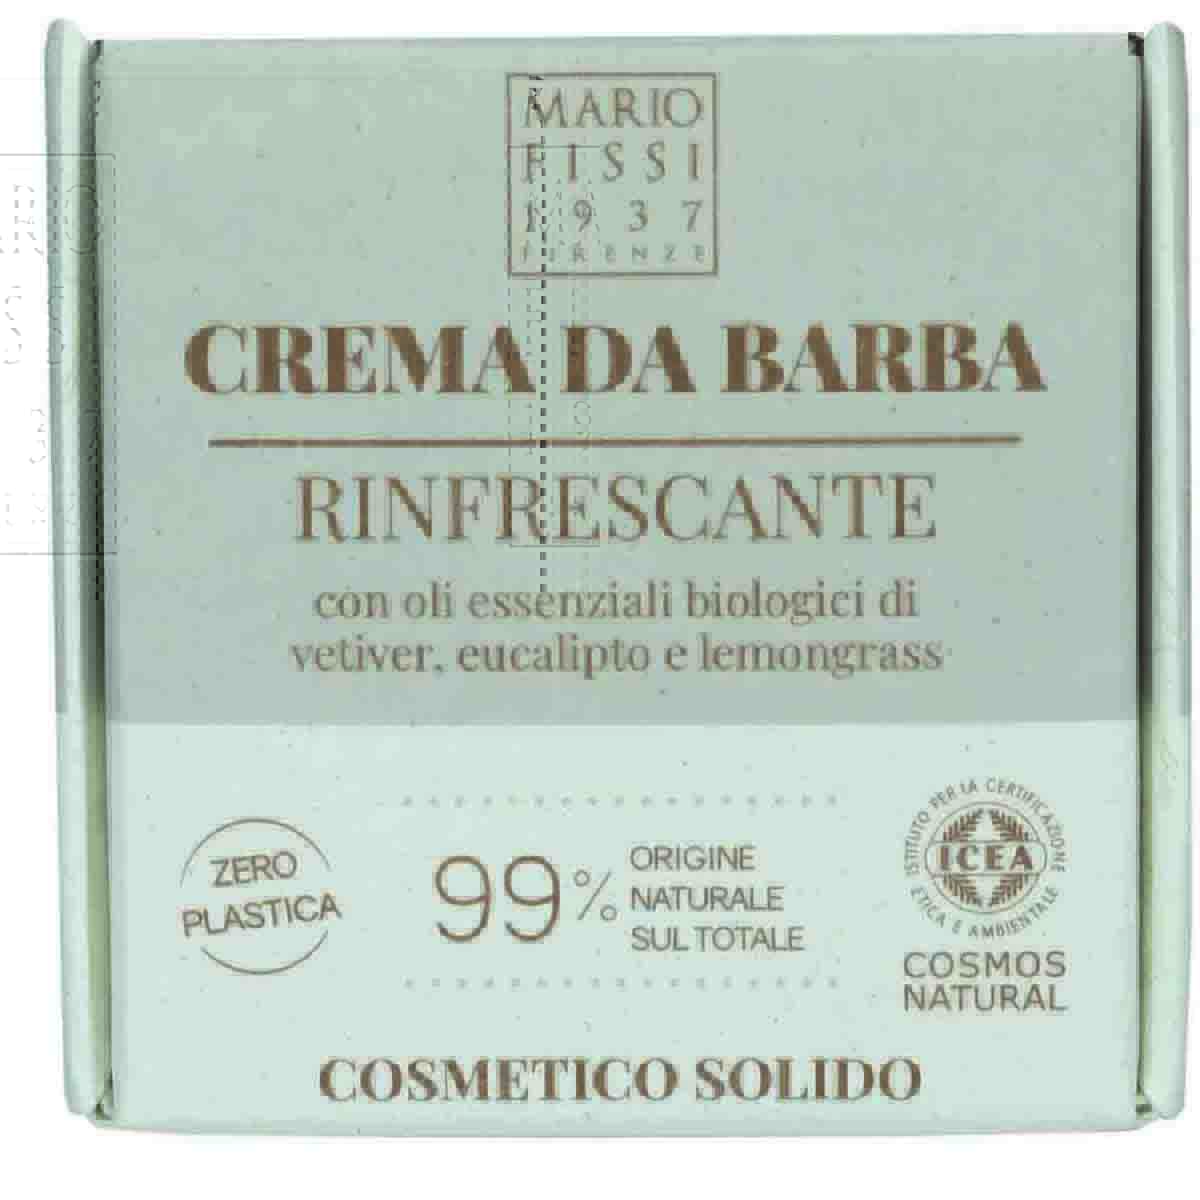 Крем-мыло для бритья твердое Mario Fissi 1937 Square Оcвежающее деликатный уход крем д тела замедляющий рост волос 100мл 20